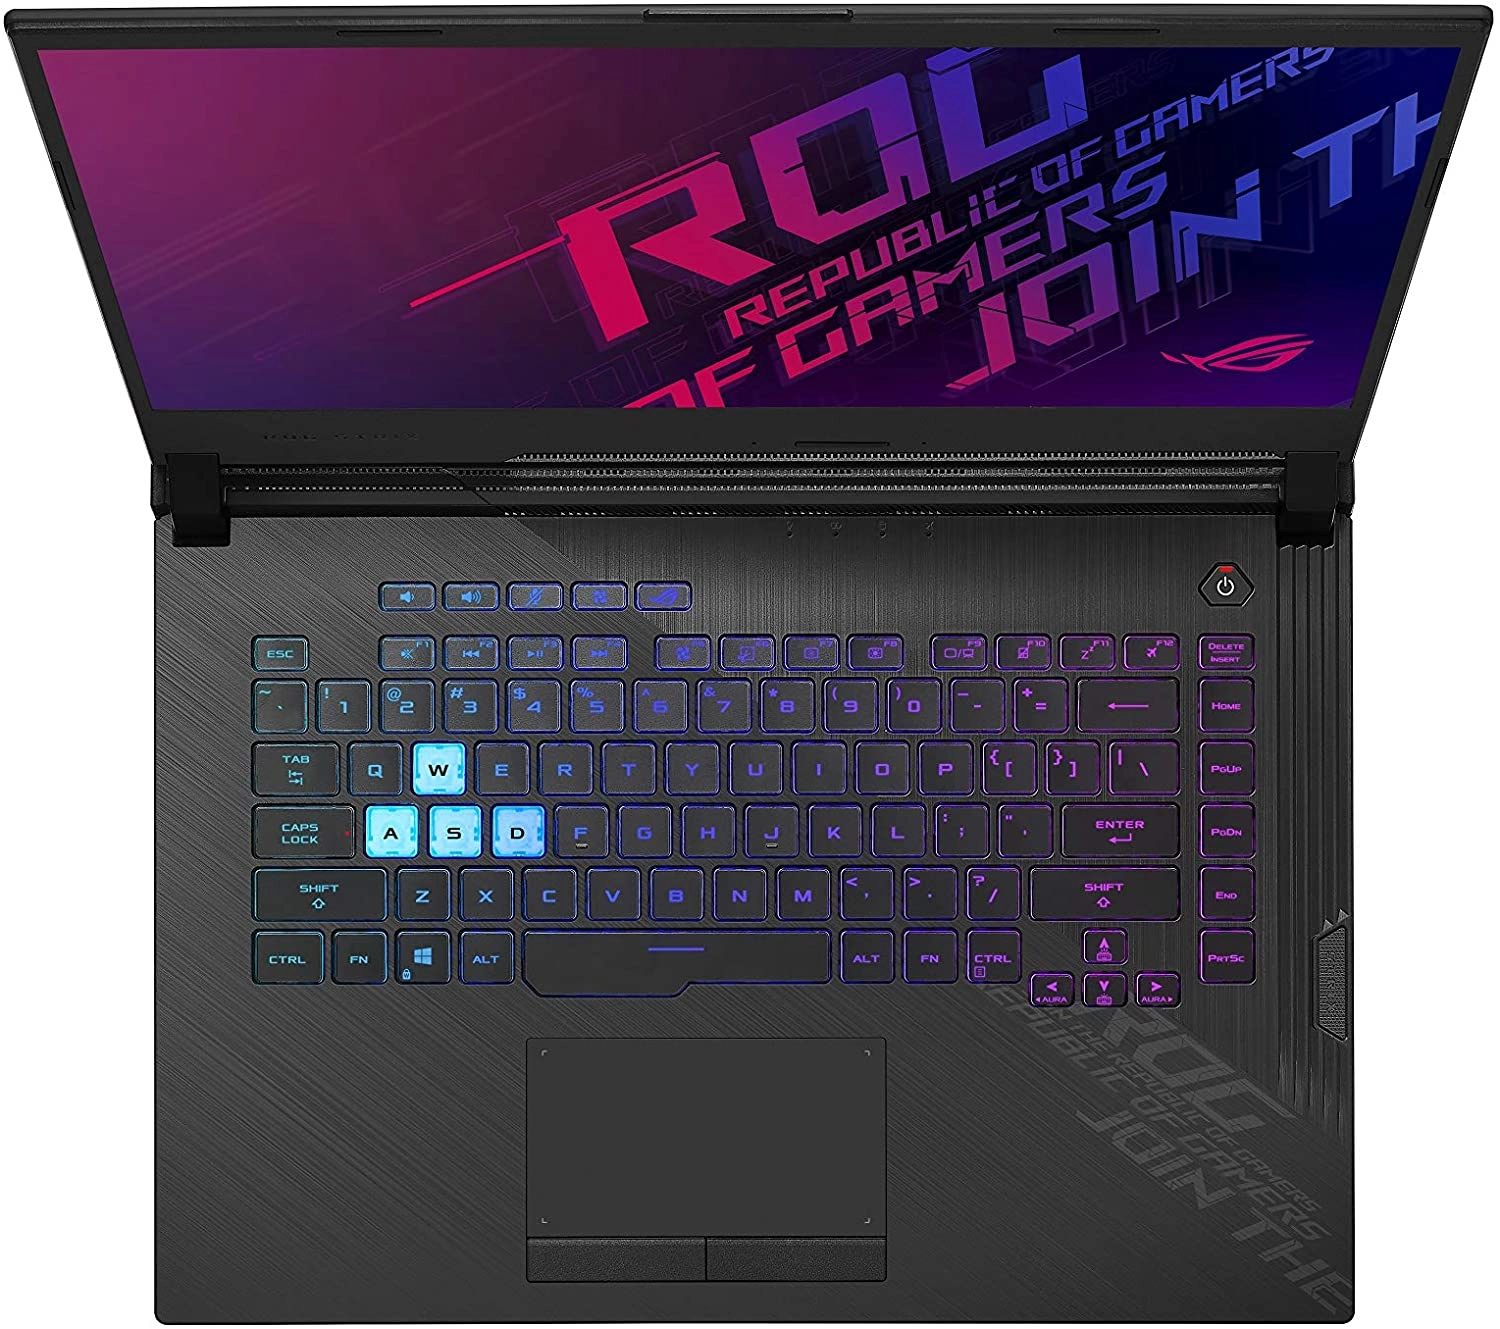 Asus ROG Strix G15 laptop image